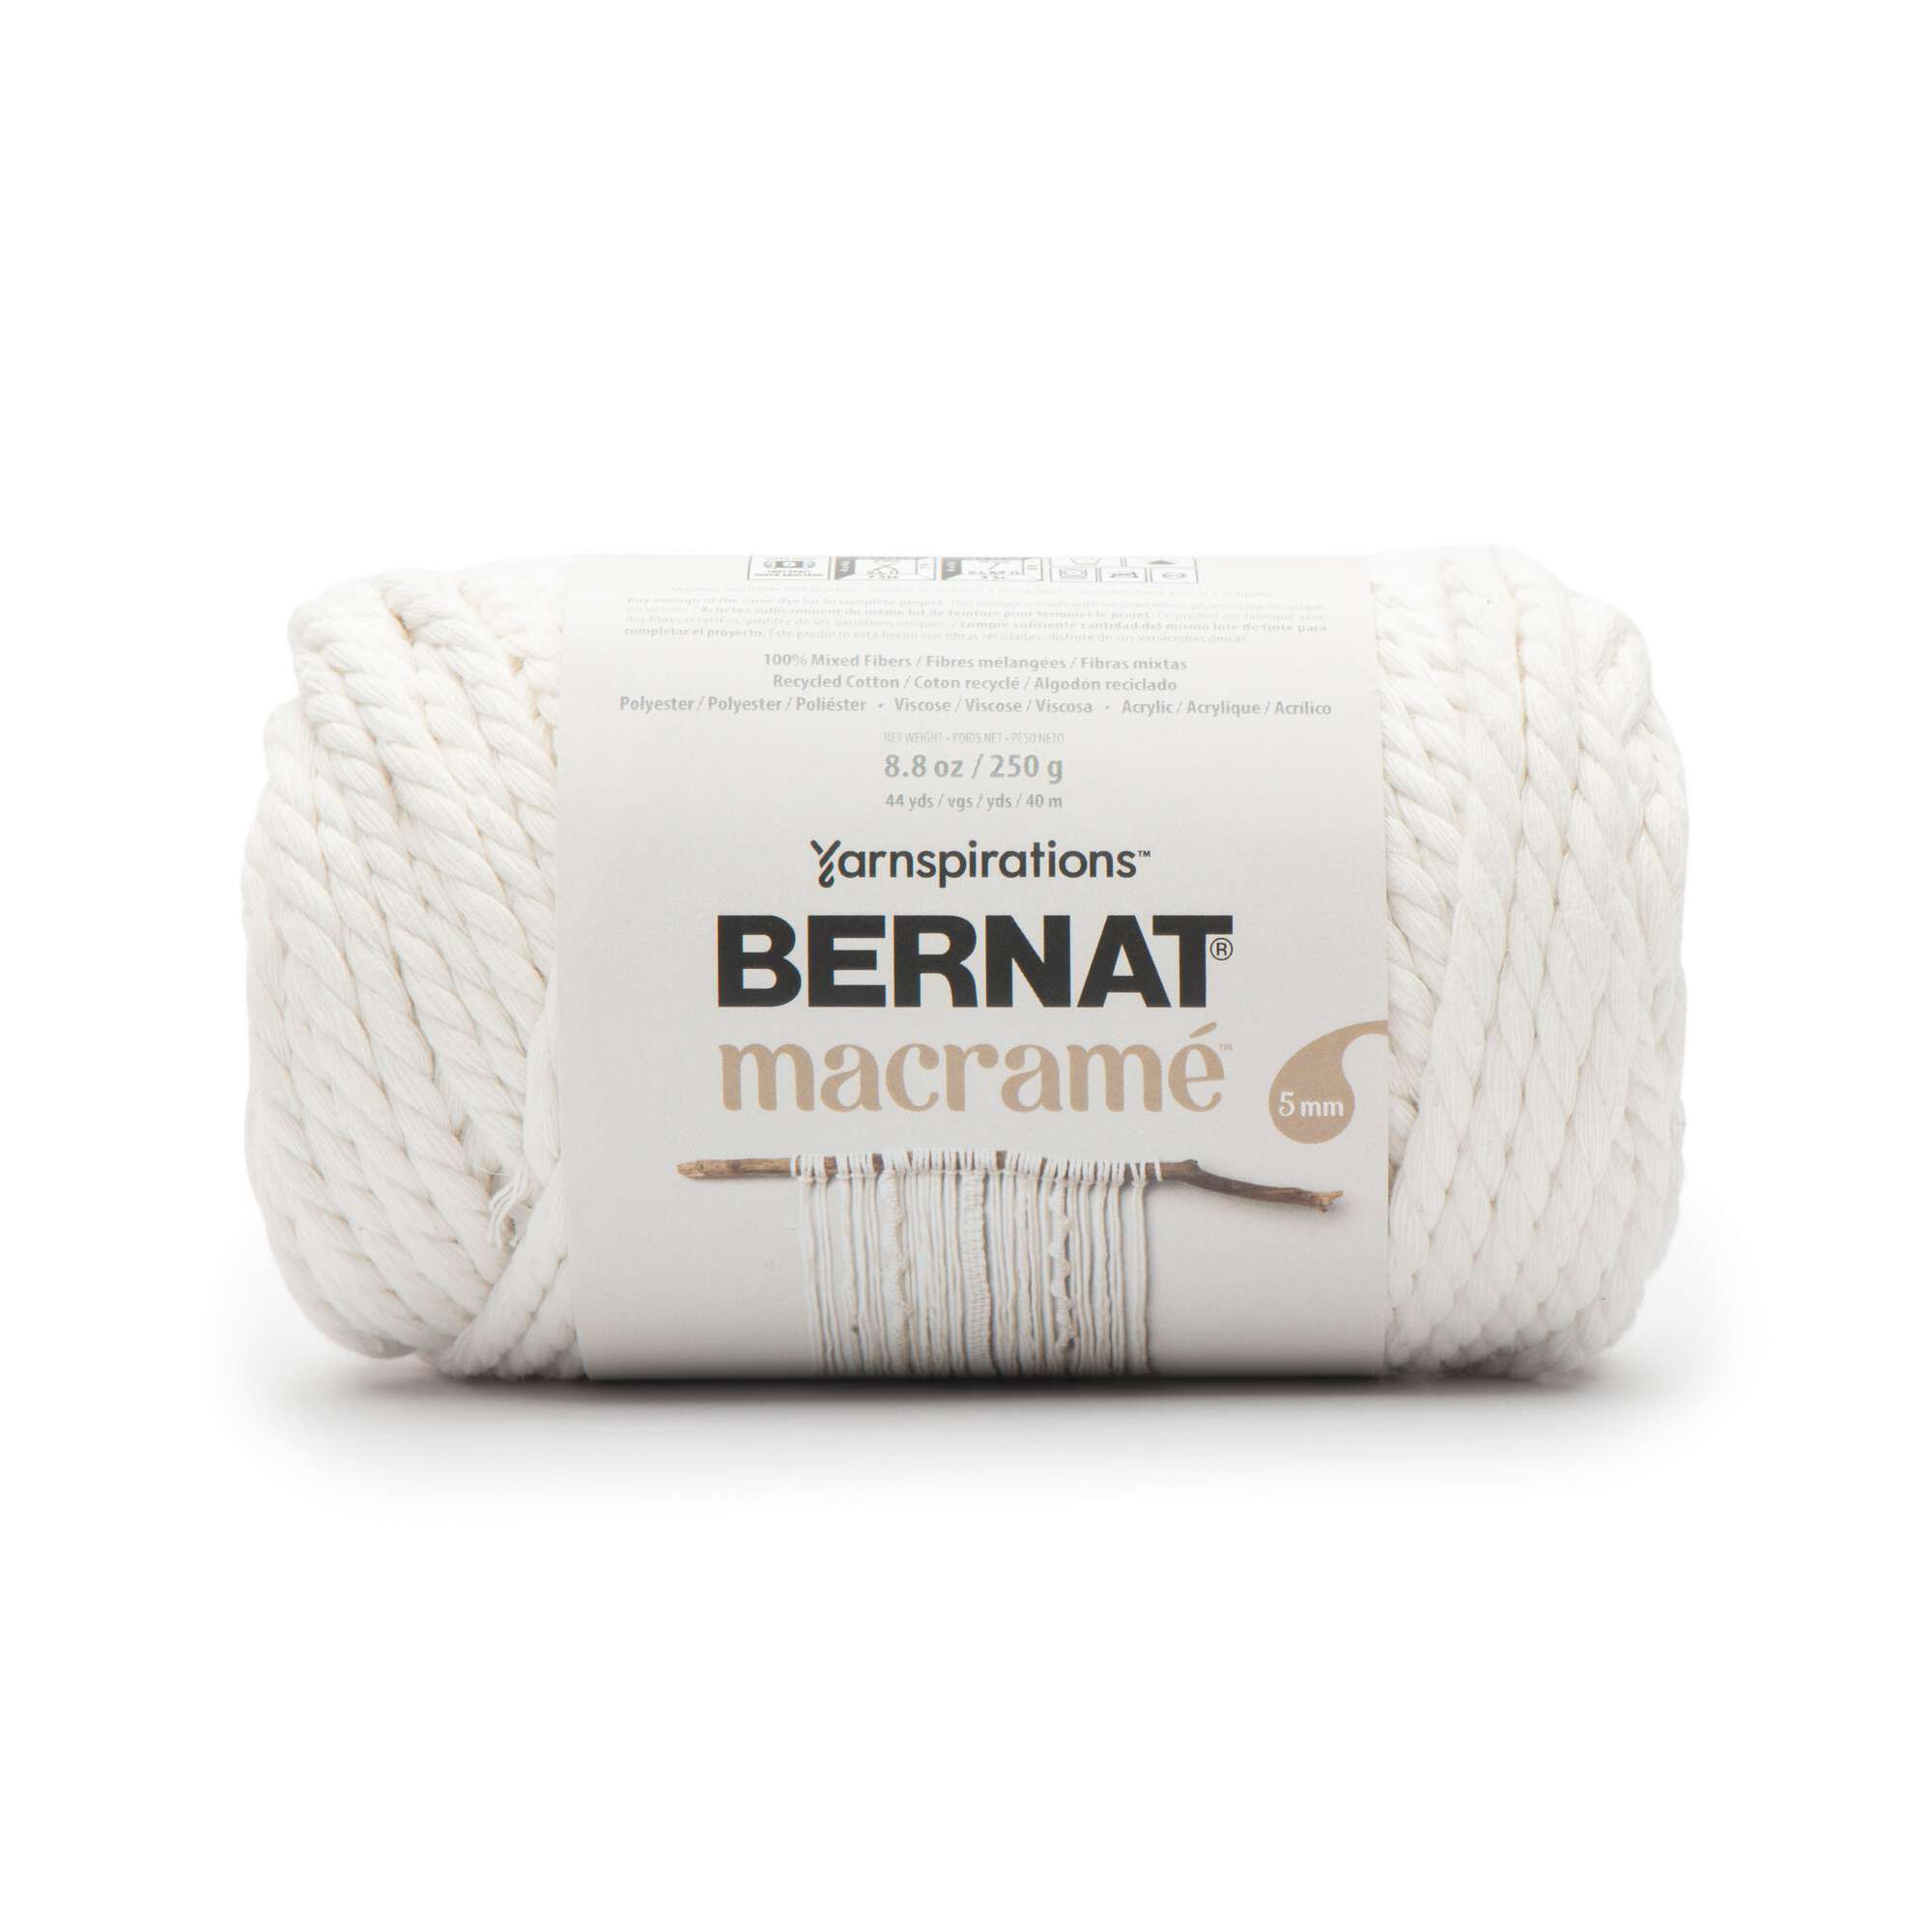 Bernat Forever Fleece Yarn 280g -  UK